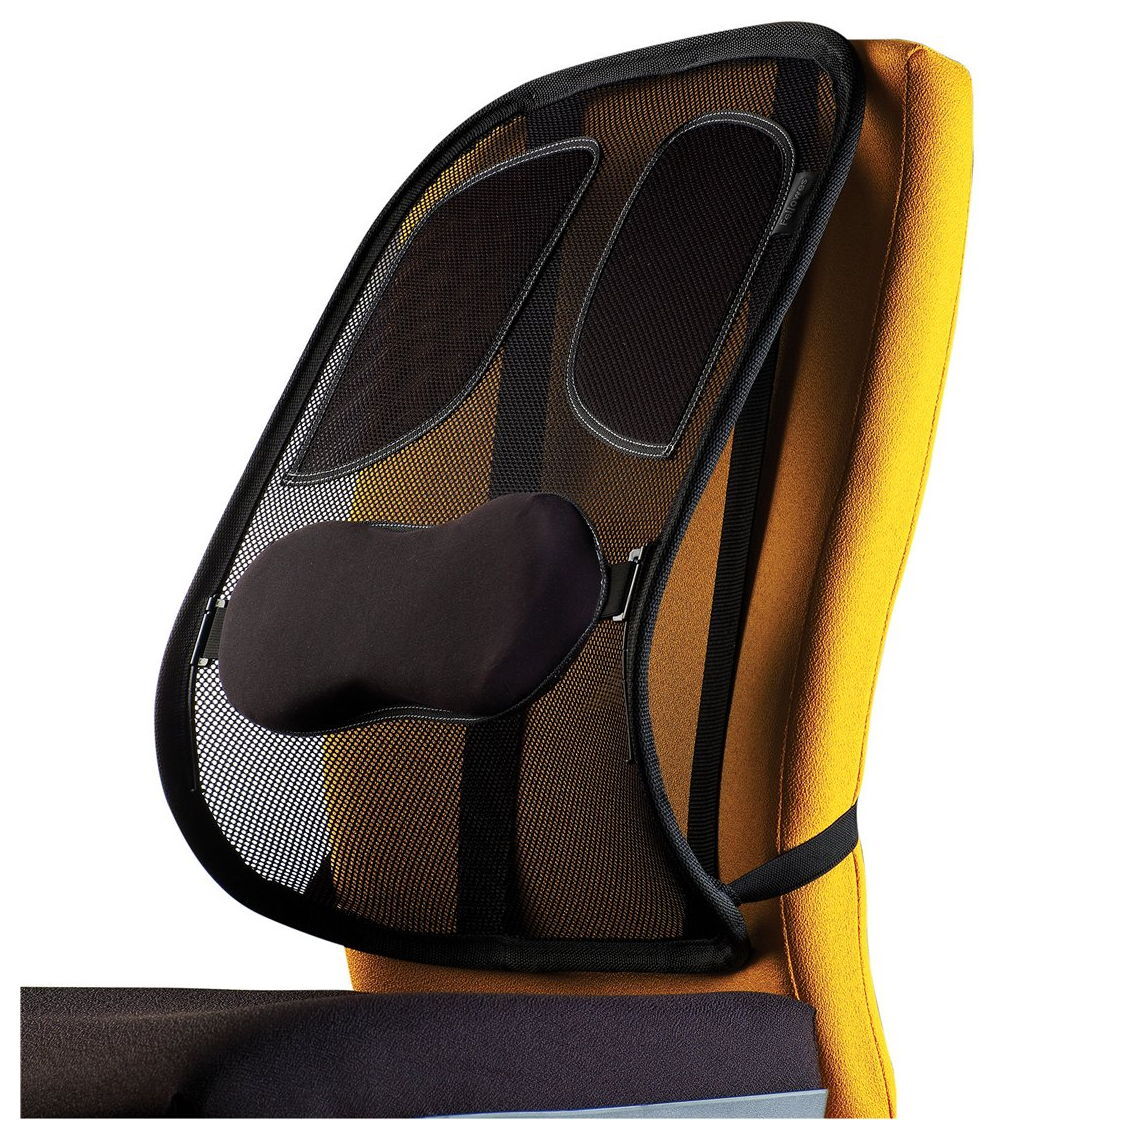 ортопедическая подушка для сидения под спину на стул